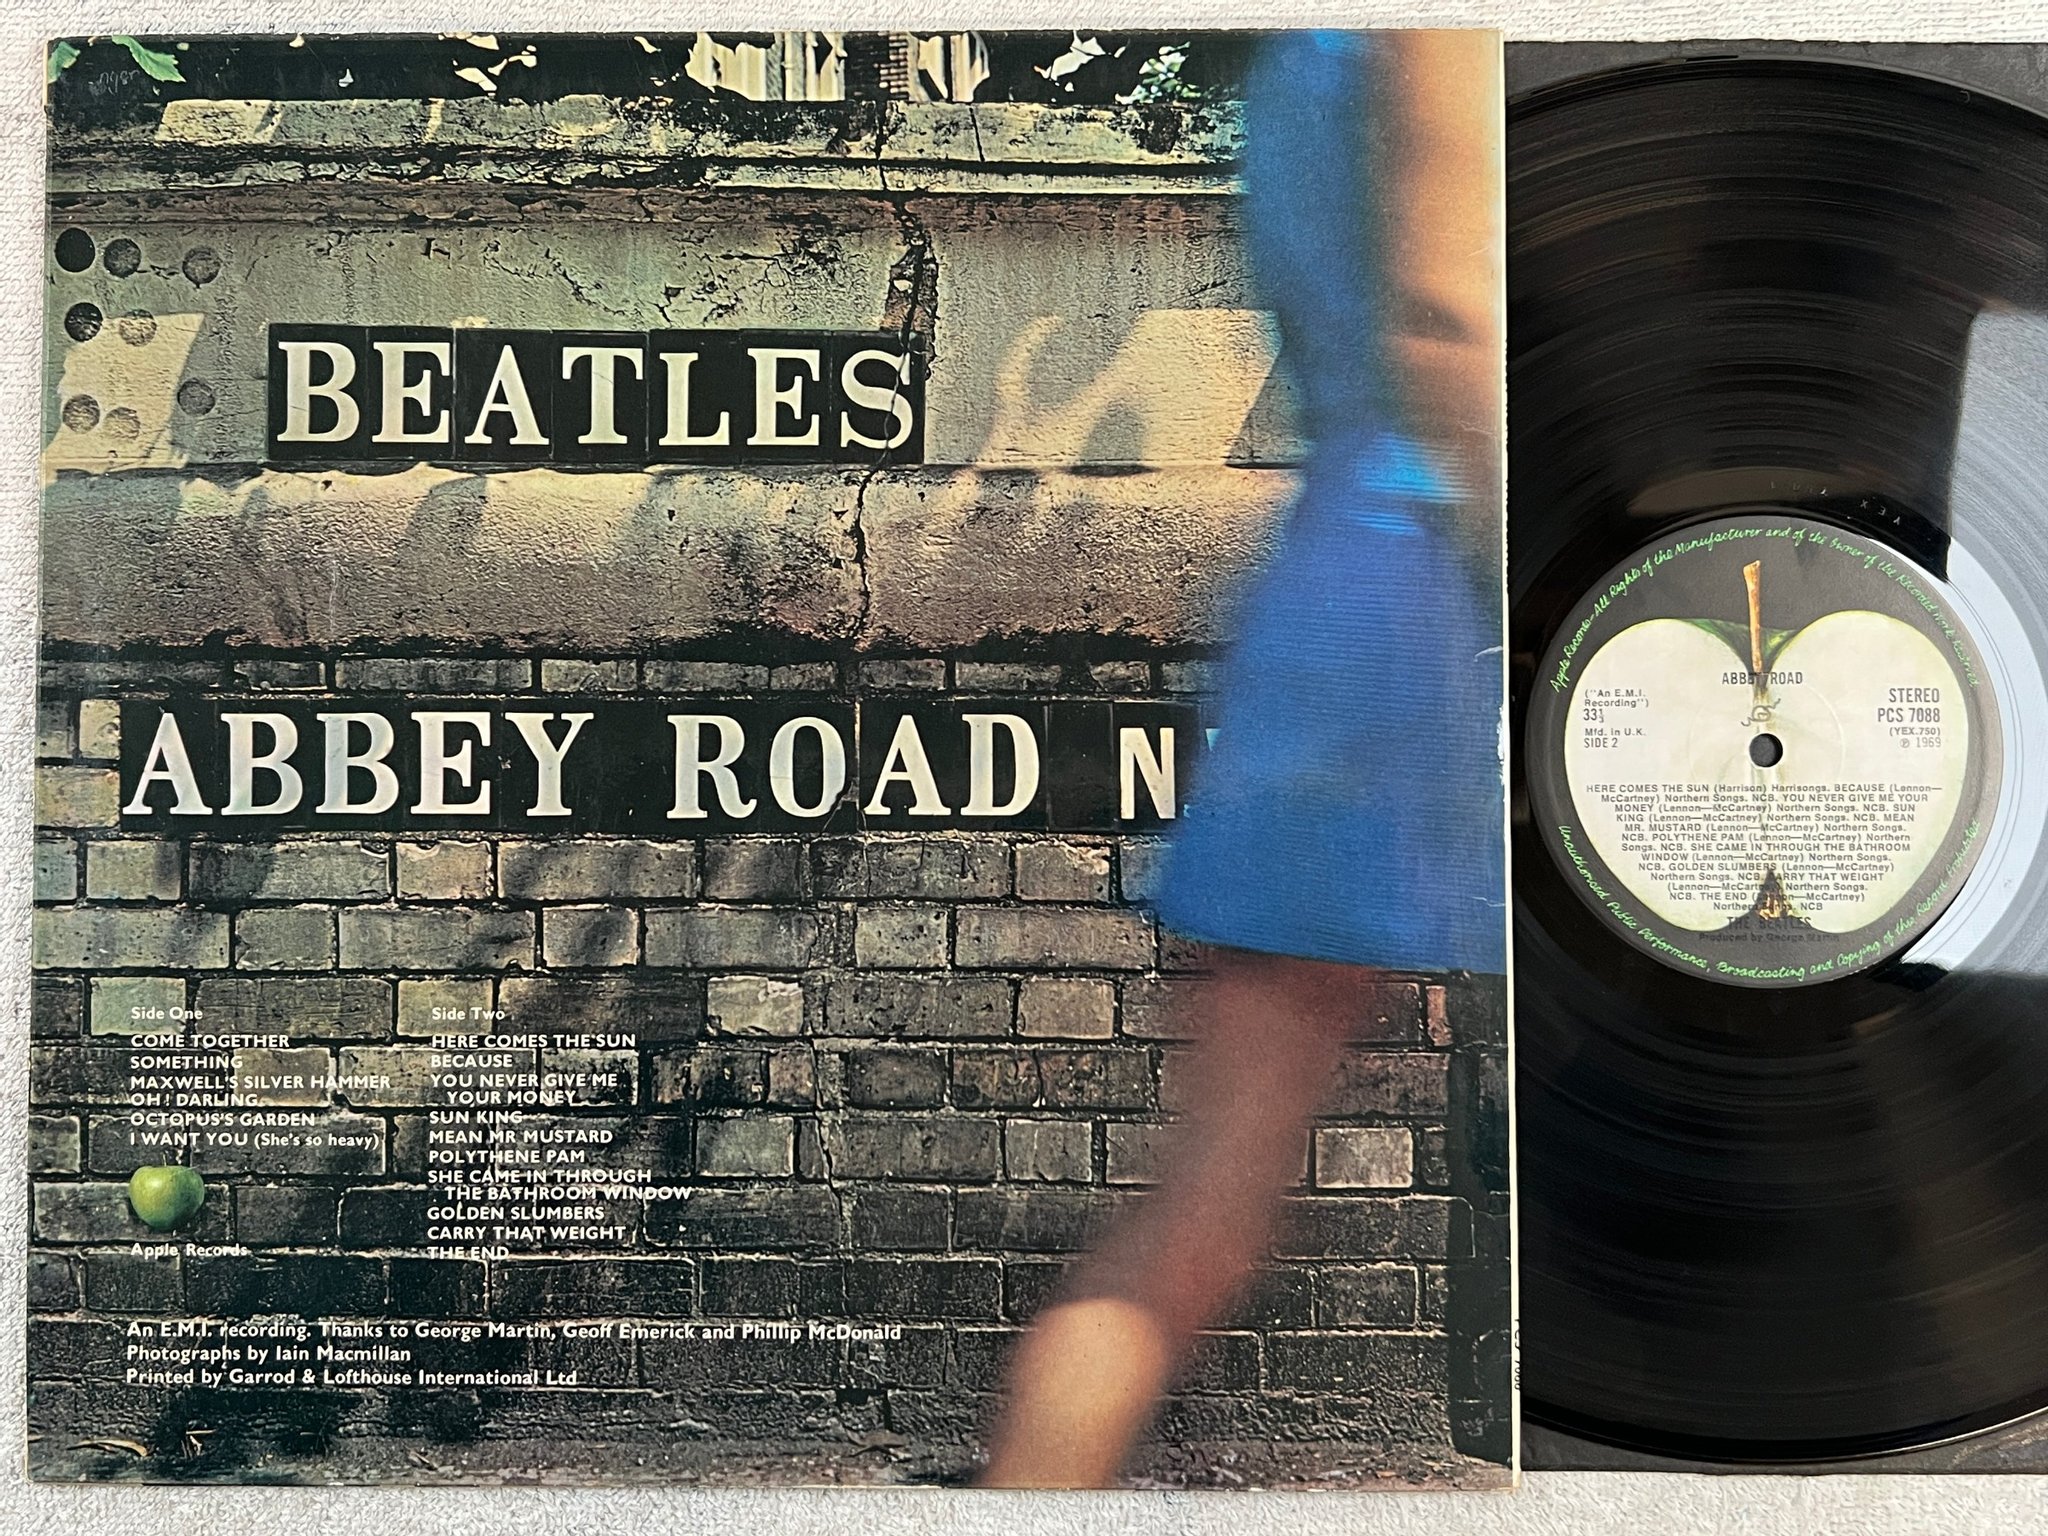 Omslagsbild för skivan THE BEATLES abbey road LP -69 UK APPLE PCS 7088